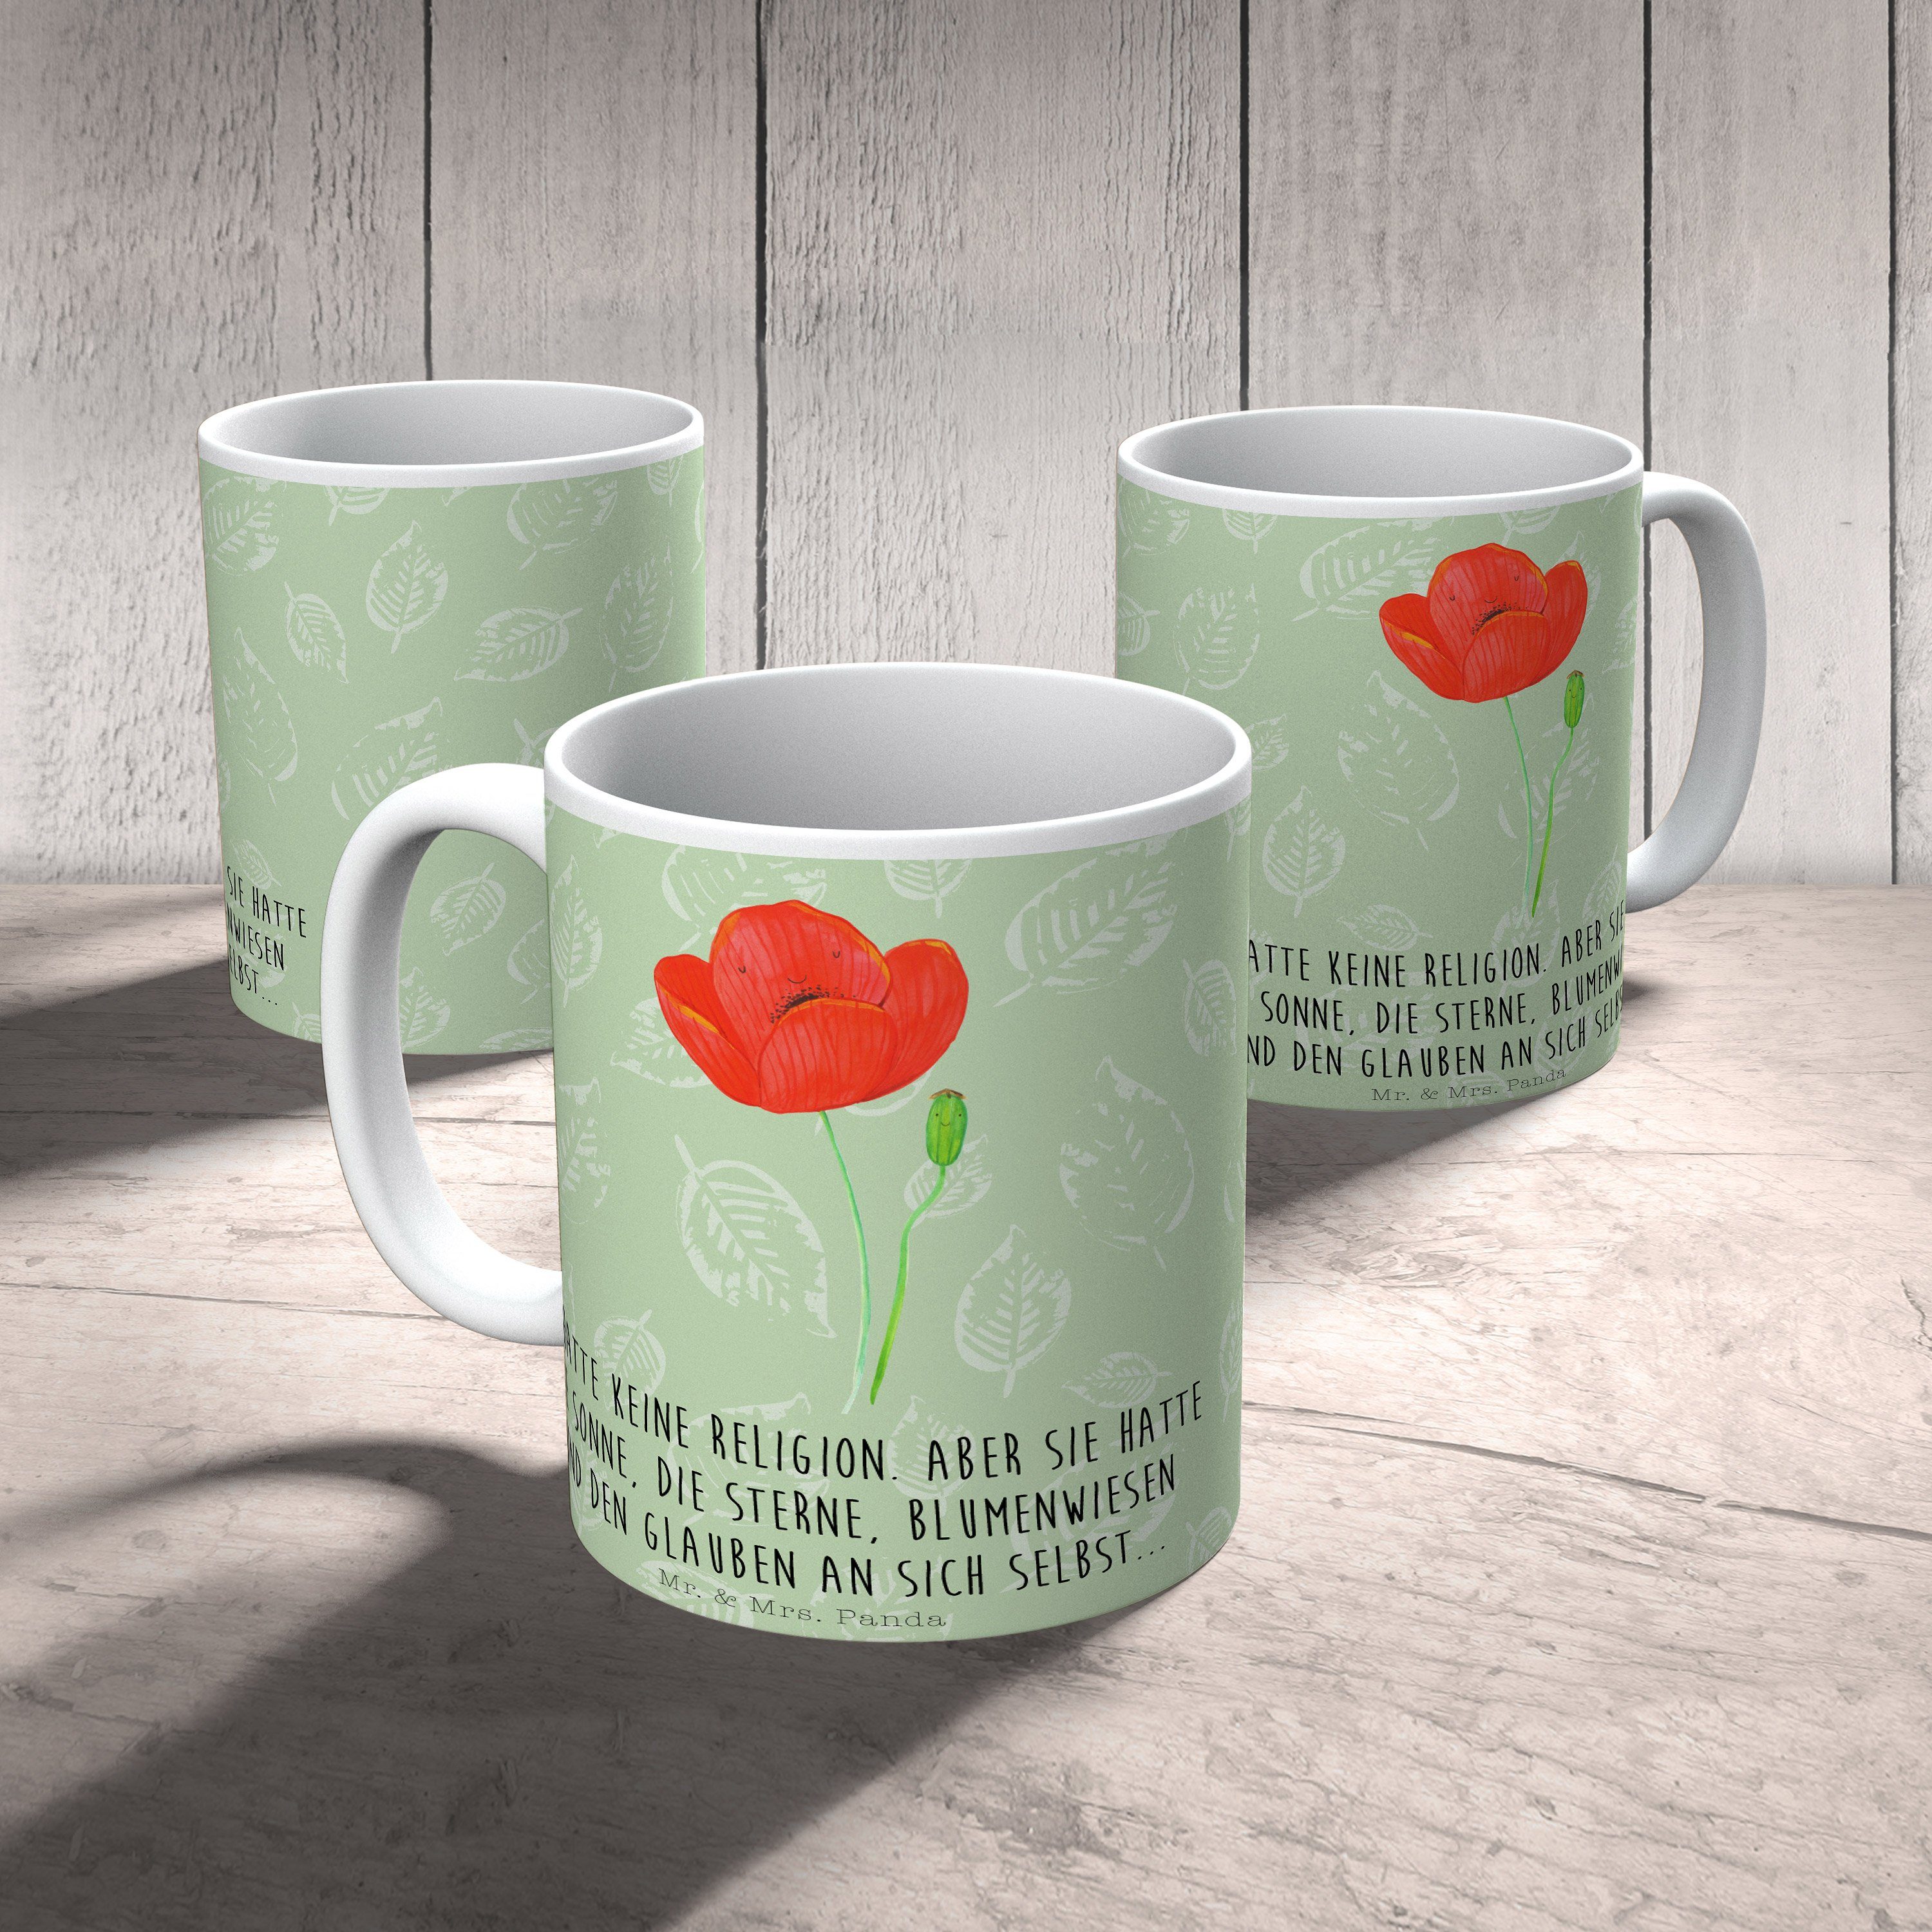 Mr. & Mrs. Panda Tasse Blu, Blattgrün Kaffeebecher, Garten, Pflanzen, Geschenk, - Mohnblume - Keramik